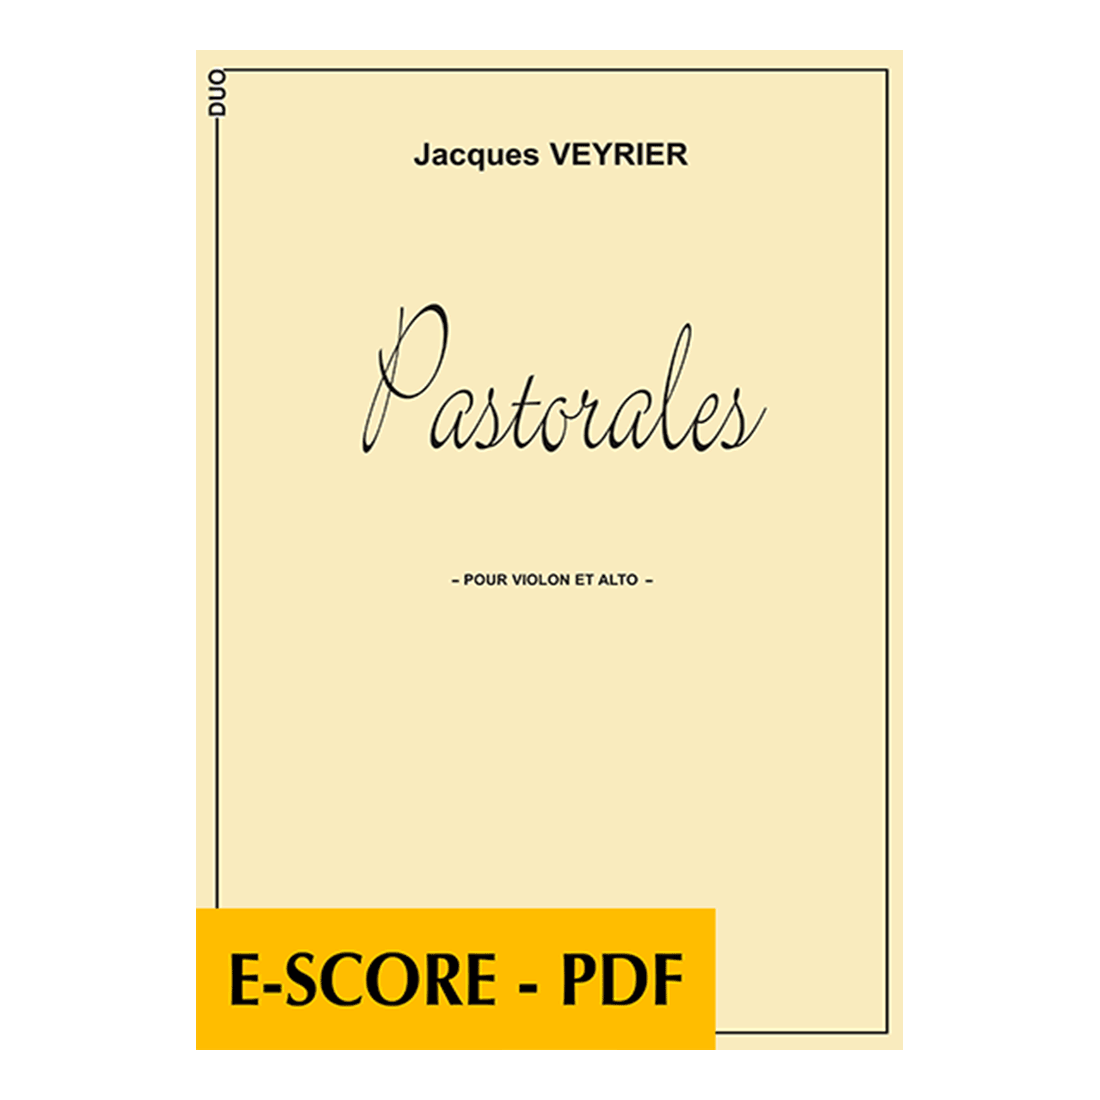 Pastorales for viola and violin - E-score PDF